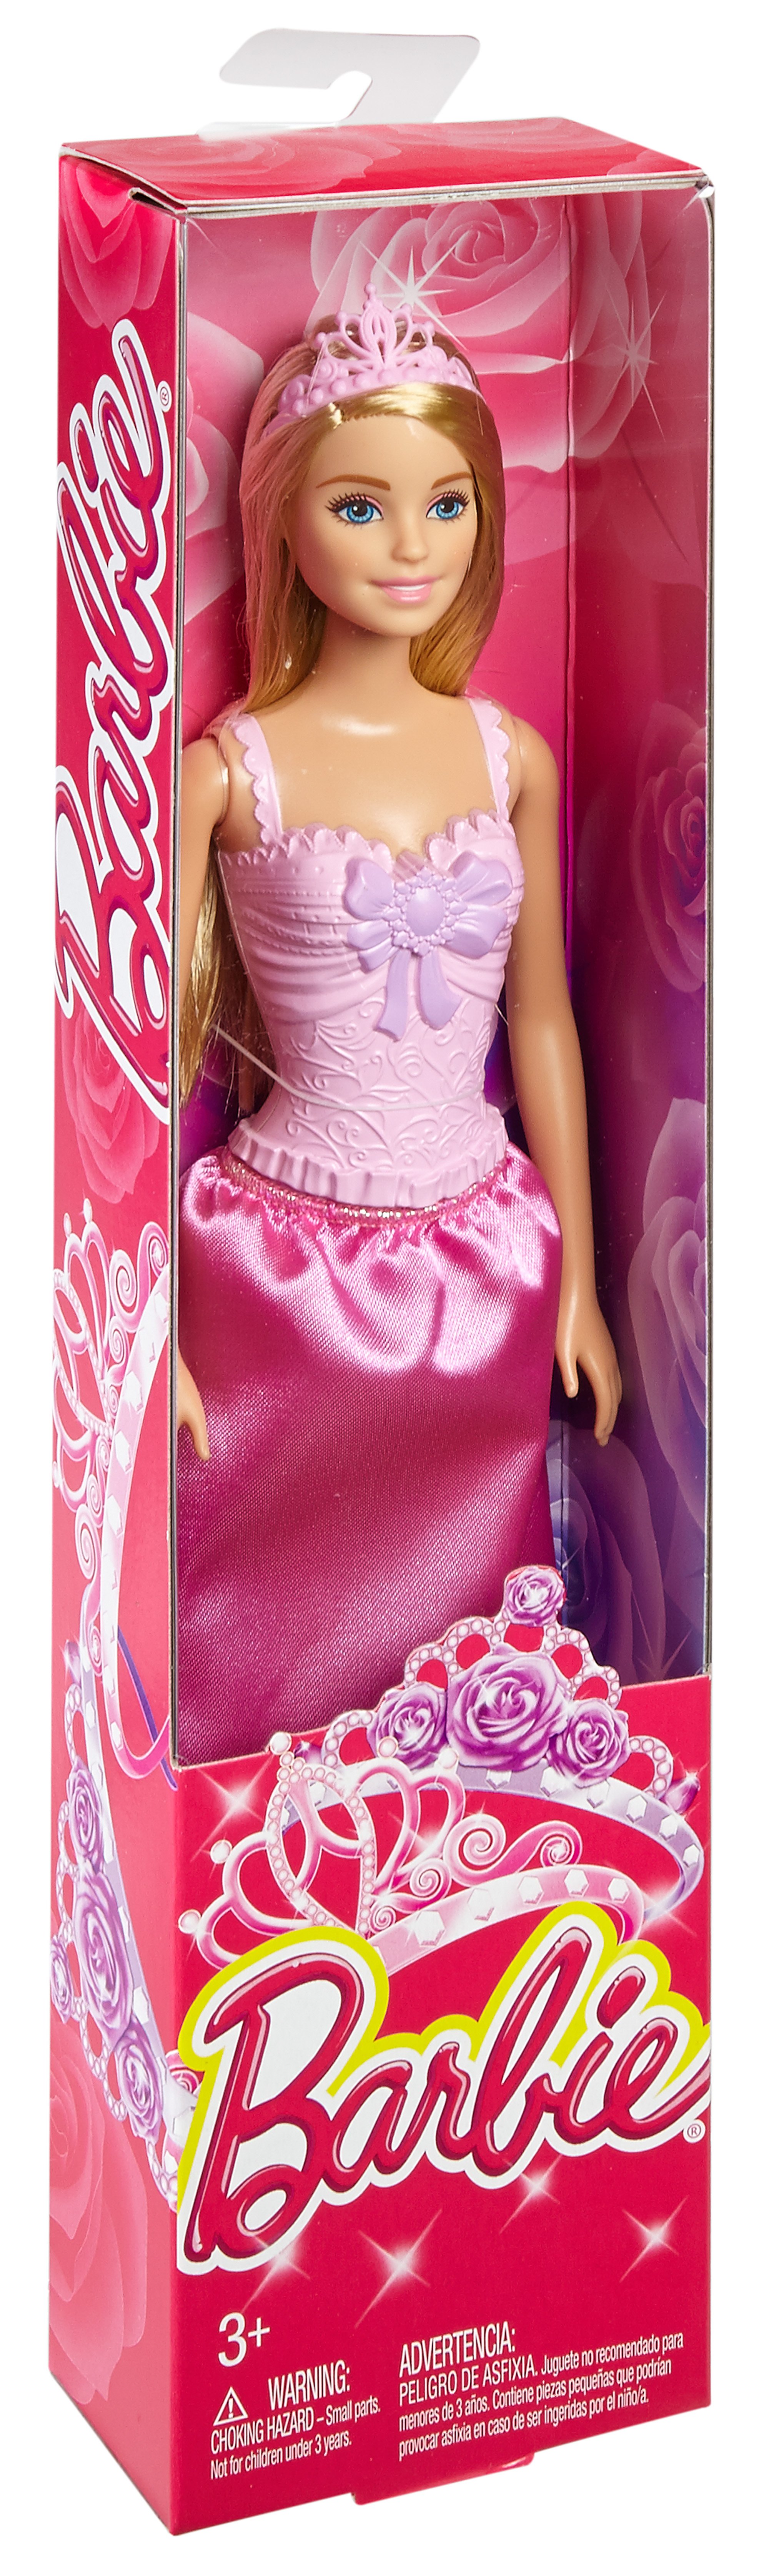 Barbie Princesa Básica Surtido